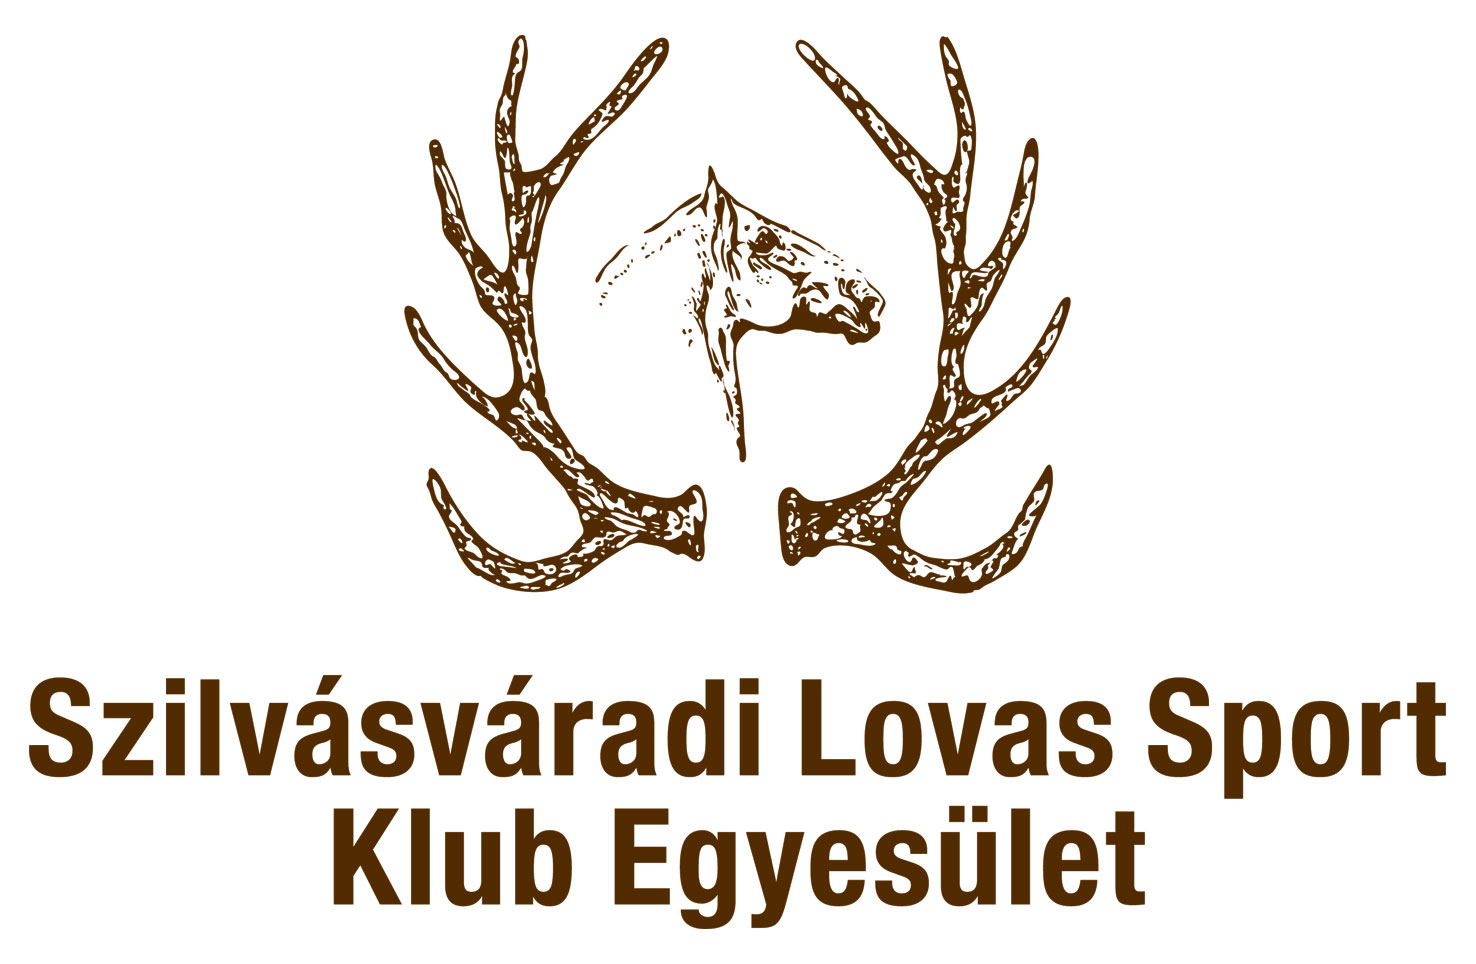 Lovasport-logo.jpg